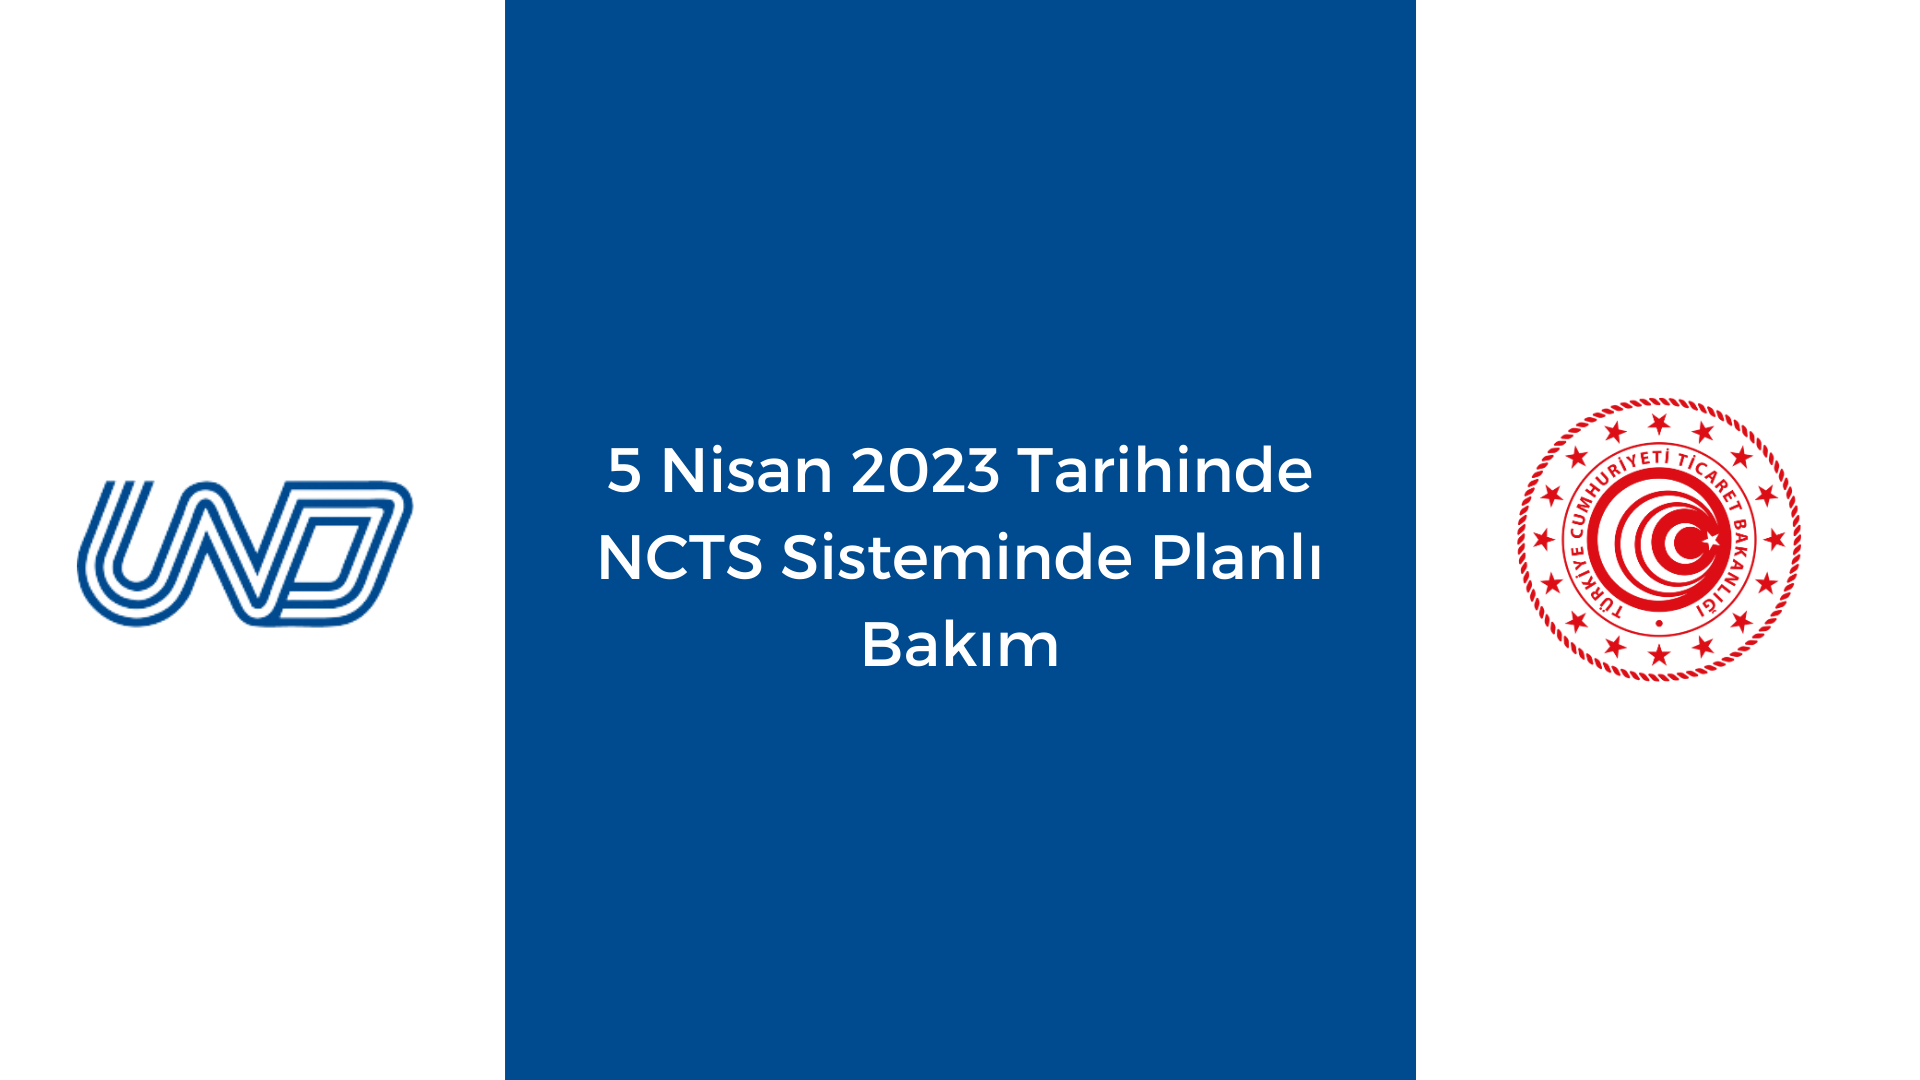 5 Nisan 2023 Tarihinde NCTS Sisteminde Planlı Bakım